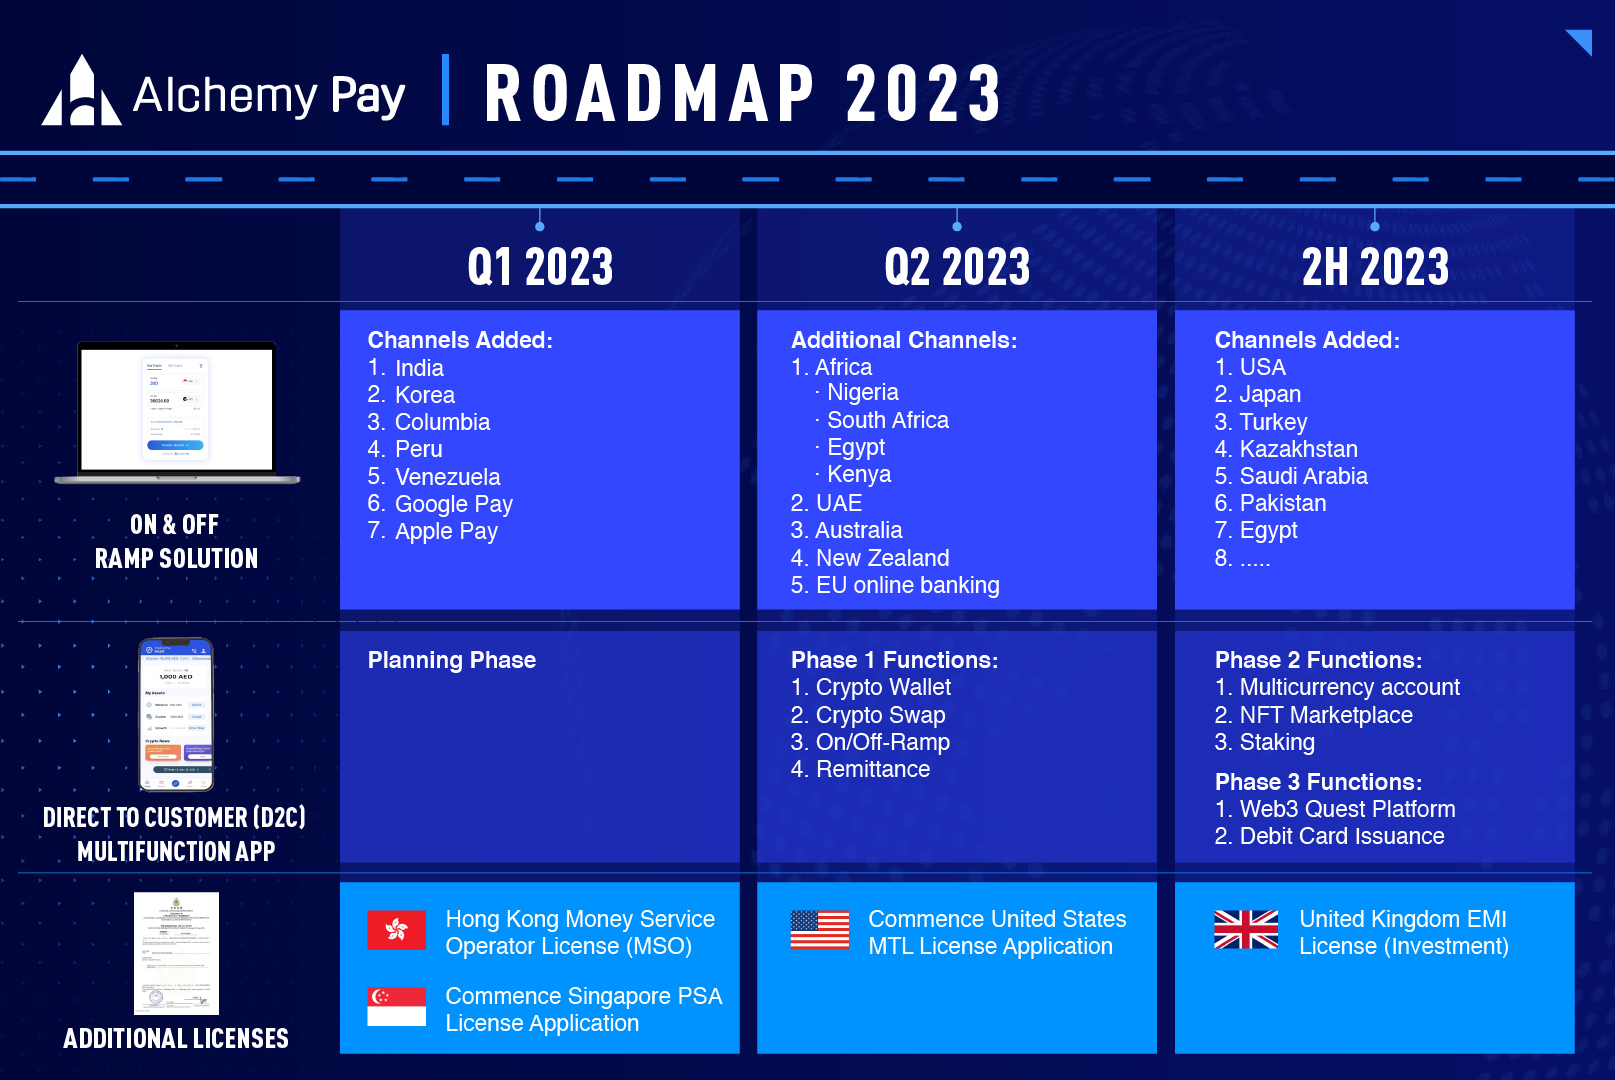 AP Roadmap 2023 